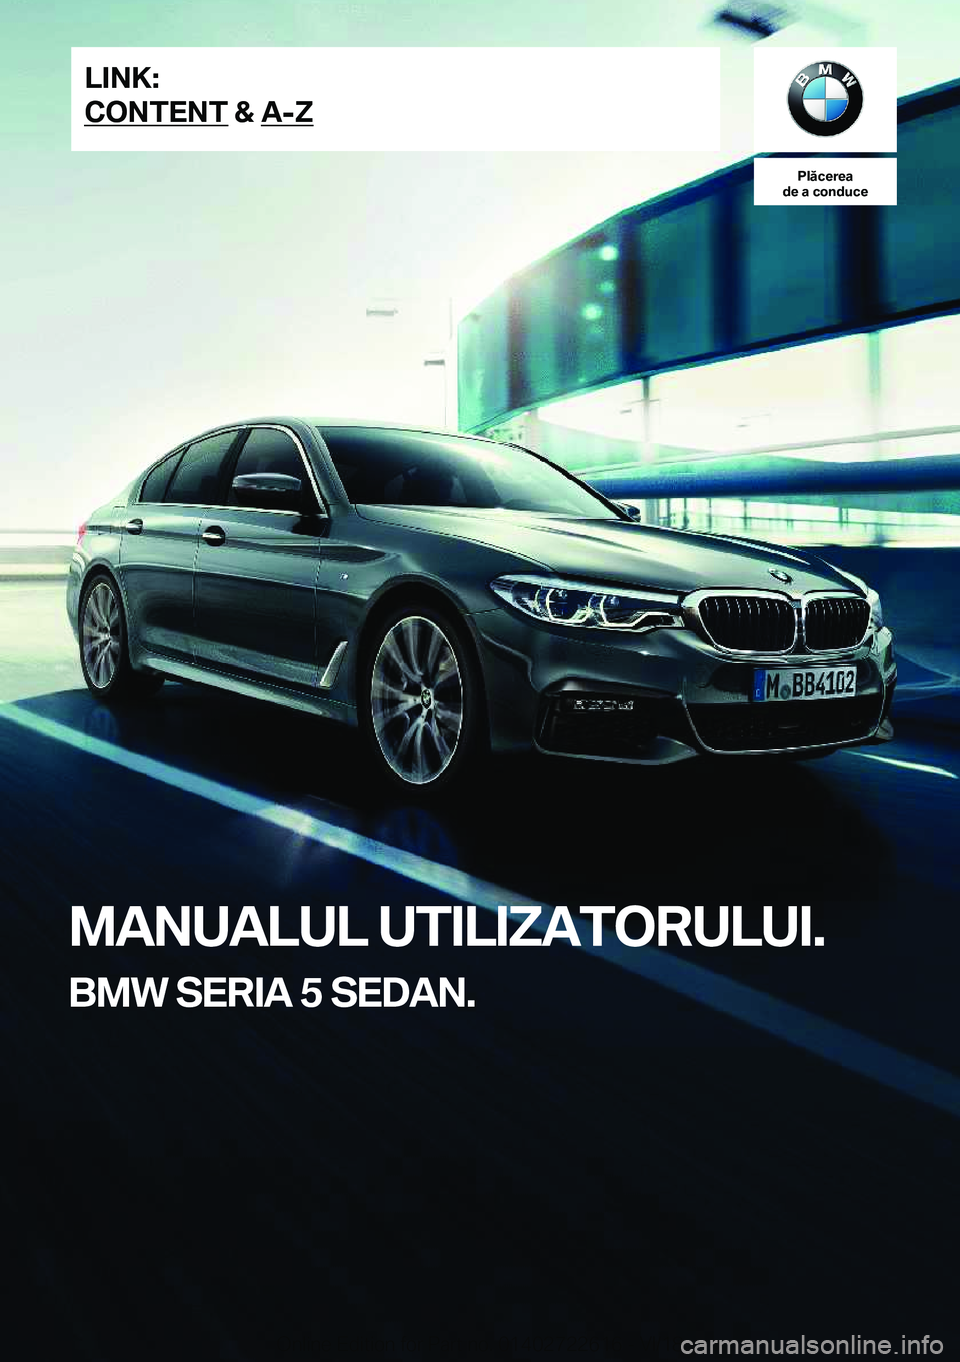 BMW 5 SERIES 2019  Ghiduri De Utilizare (in Romanian) �P�l�ă�c�e�r�e�a
�d�e��a��c�o�n�d�u�c�e
�M�A�N�U�A�L�U�L��U�T�I�L�I�Z�A�T�O�R�U�L�U�I�.
�B�M�W��S�E�R�I�A��5��S�E�D�A�N�.�L�I�N�K�:
�C�O�N�T�E�N�T��&��A�-�Z�O�n�l�i�n�e��E�d�i�t�i�o�n��f�o�